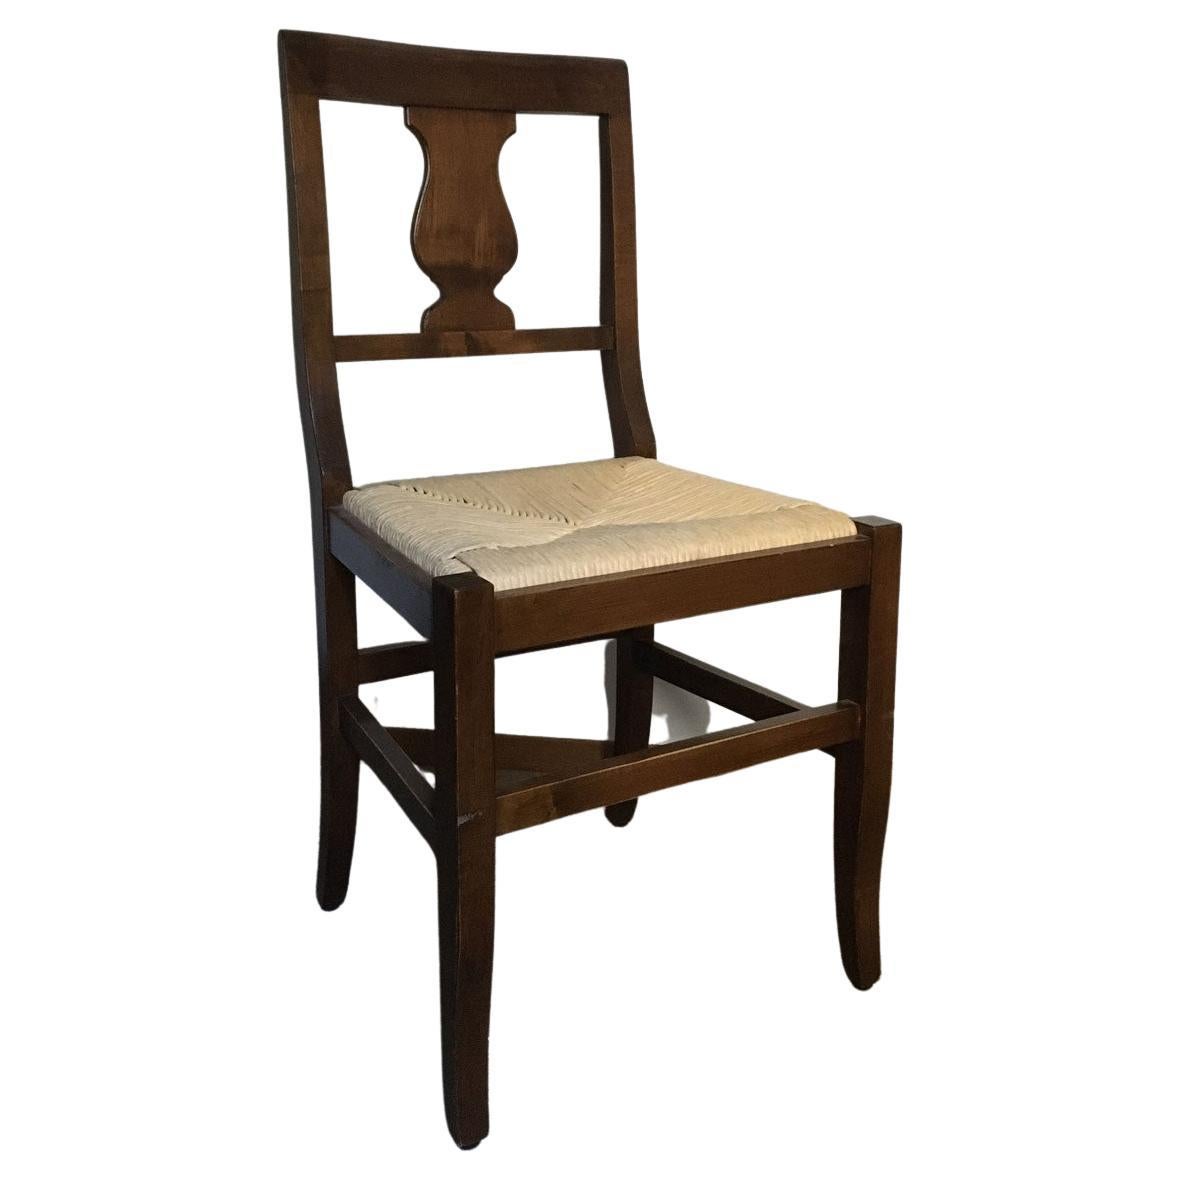 Dieses italienische Set aus 6 charmanten Stühlen ist aus massivem Nussbaumholz gefertigt. Der Sitz ist aus natürlichem Raffiabast handgefertigt und hat eine natürliche Farbe.
Diese Art von Stühlen hat eine Form, die ursprünglich aus der